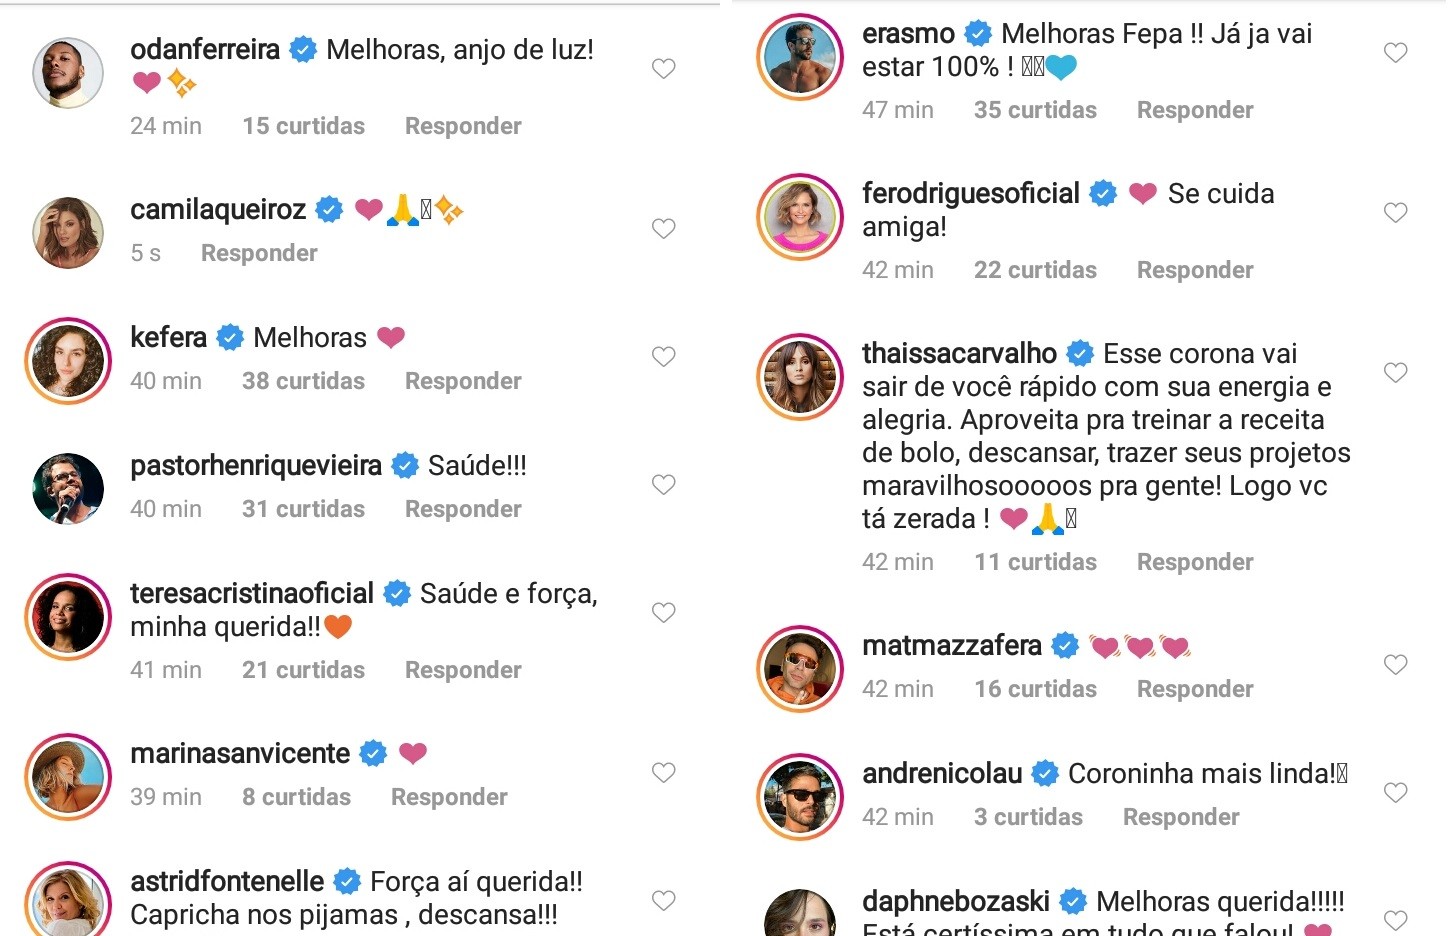 Fernanda Paes Leme recebe apoio nas redes sociais após diagnóstico de Covid-19 (Foto: Reprodução/Instagram)